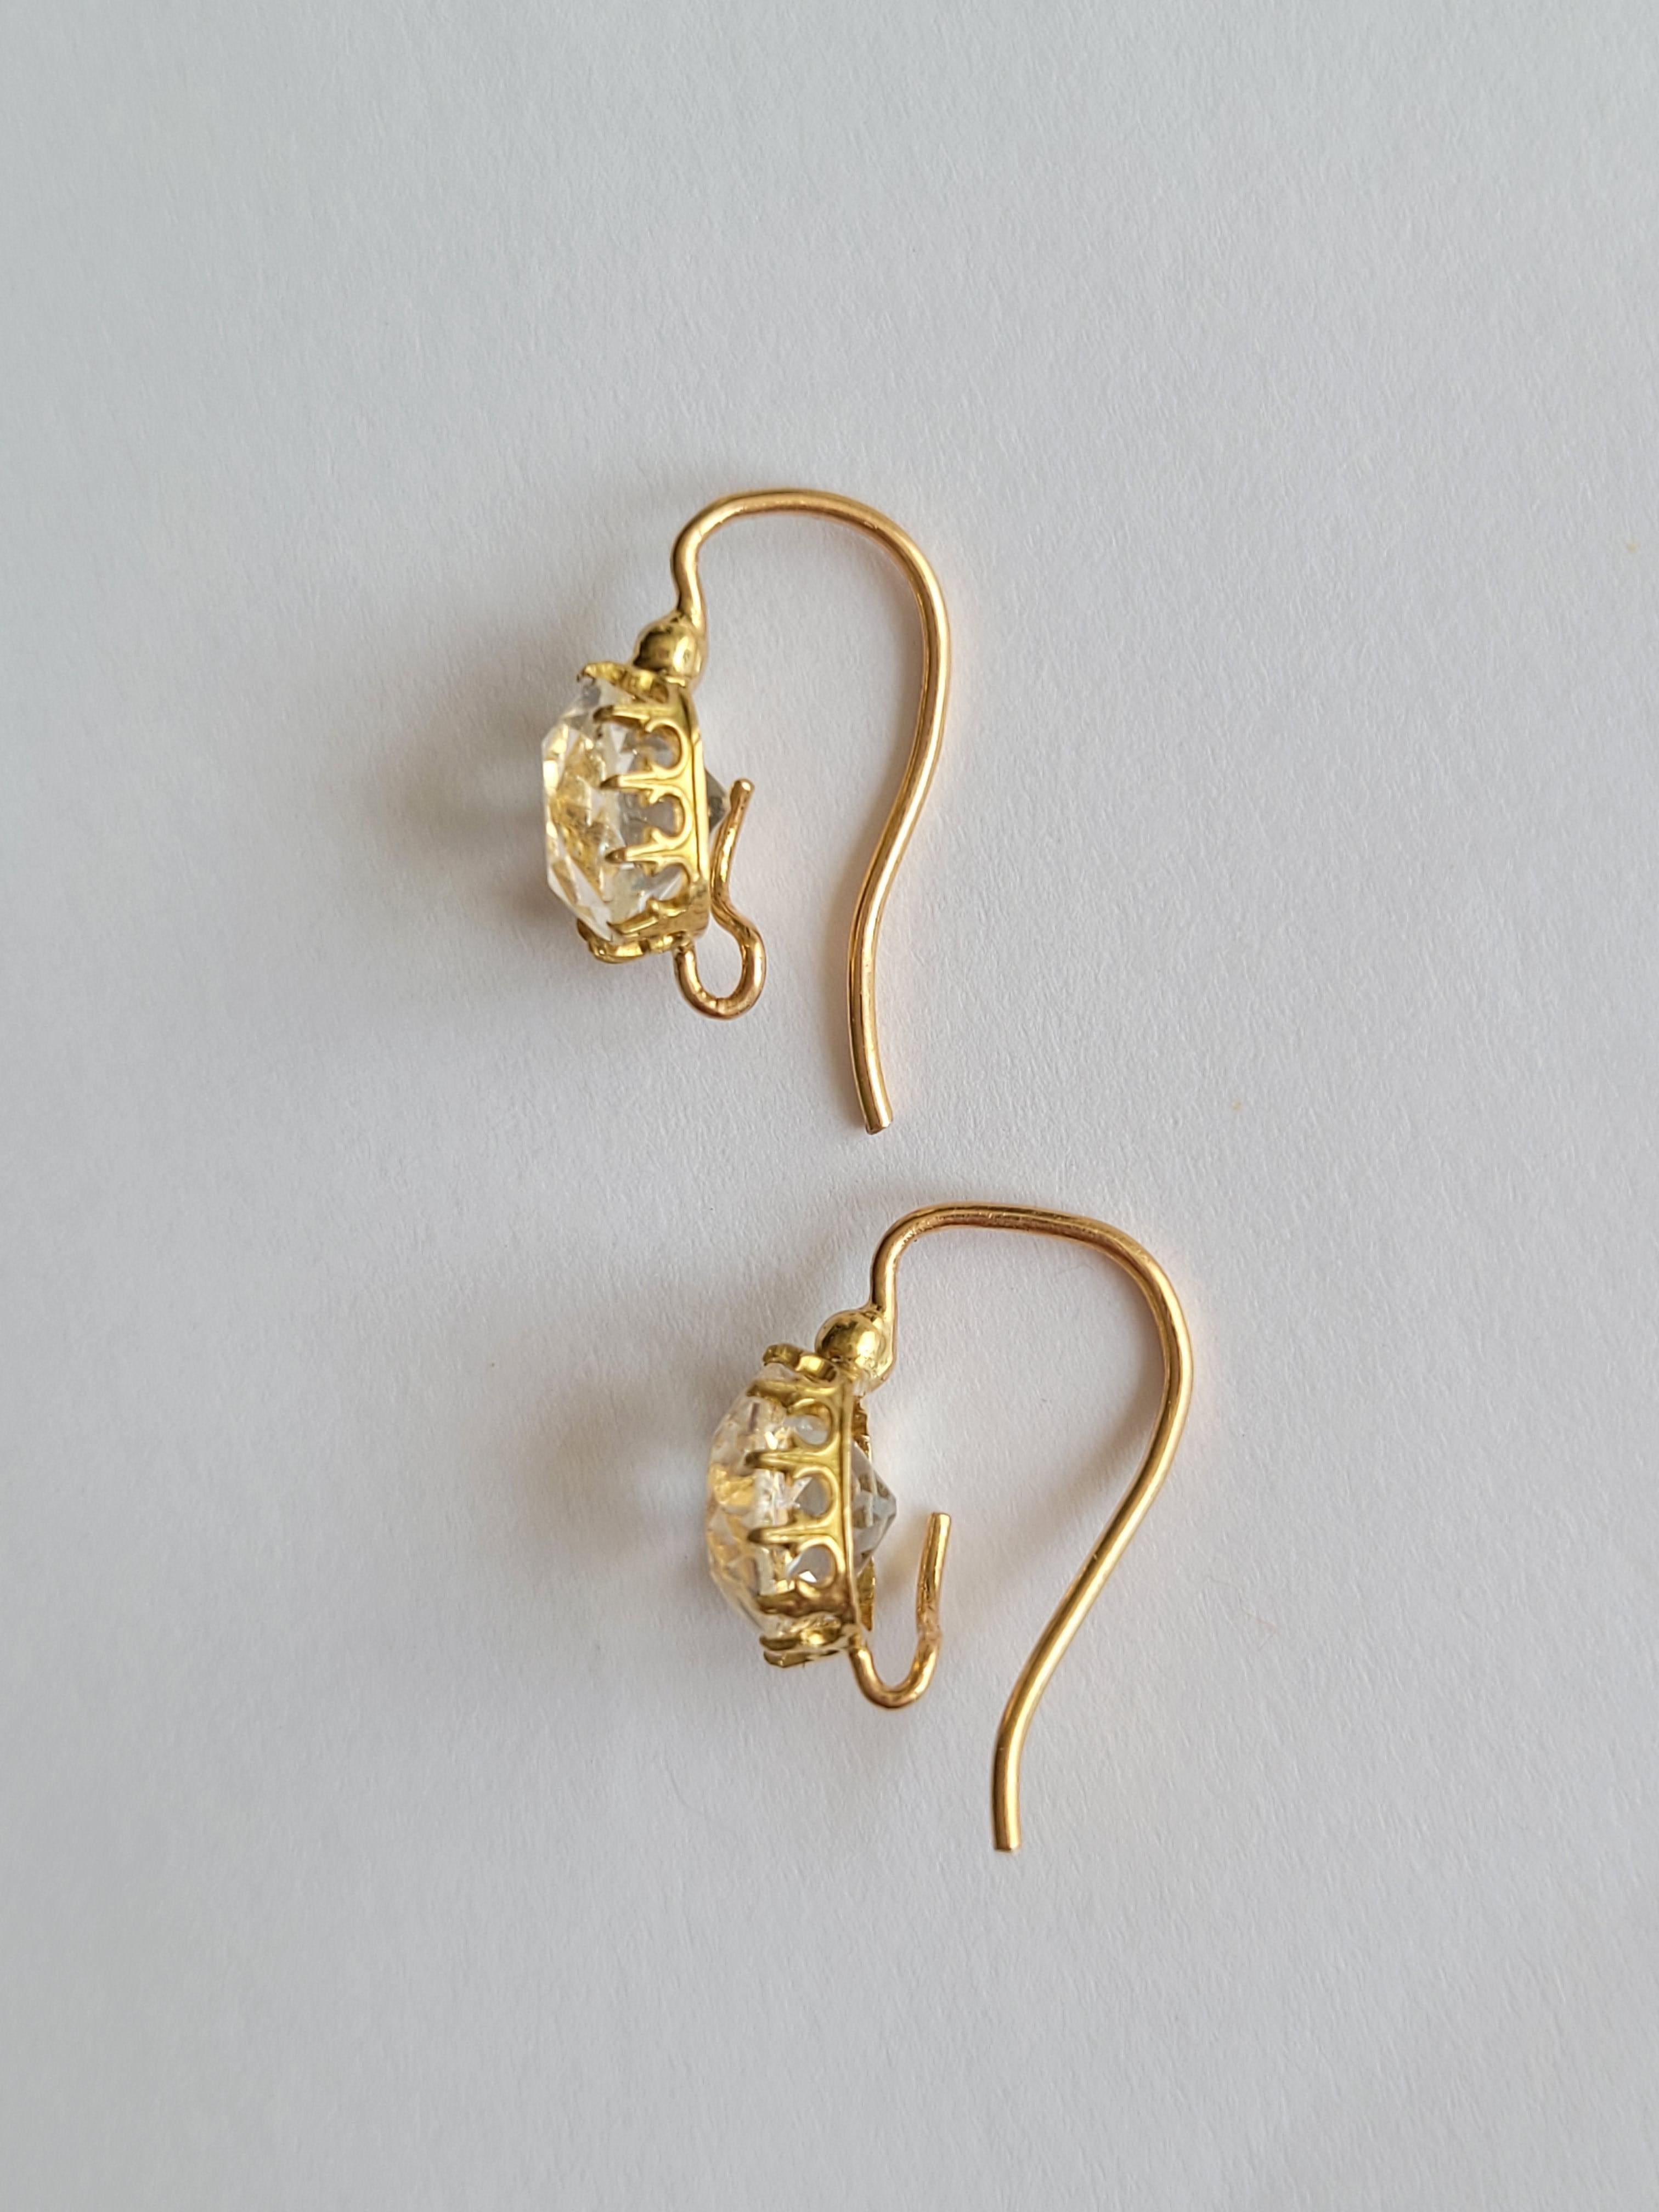 Ces exquises boucles d'oreilles de la fin du XIXe siècle font preuve d'une élégance intemporelle. Elles sont fabriquées en or 18 carats lustré et ornées d'envoûtantes pierres en cristal de roche dans une monture royale en forme de couronne. Le